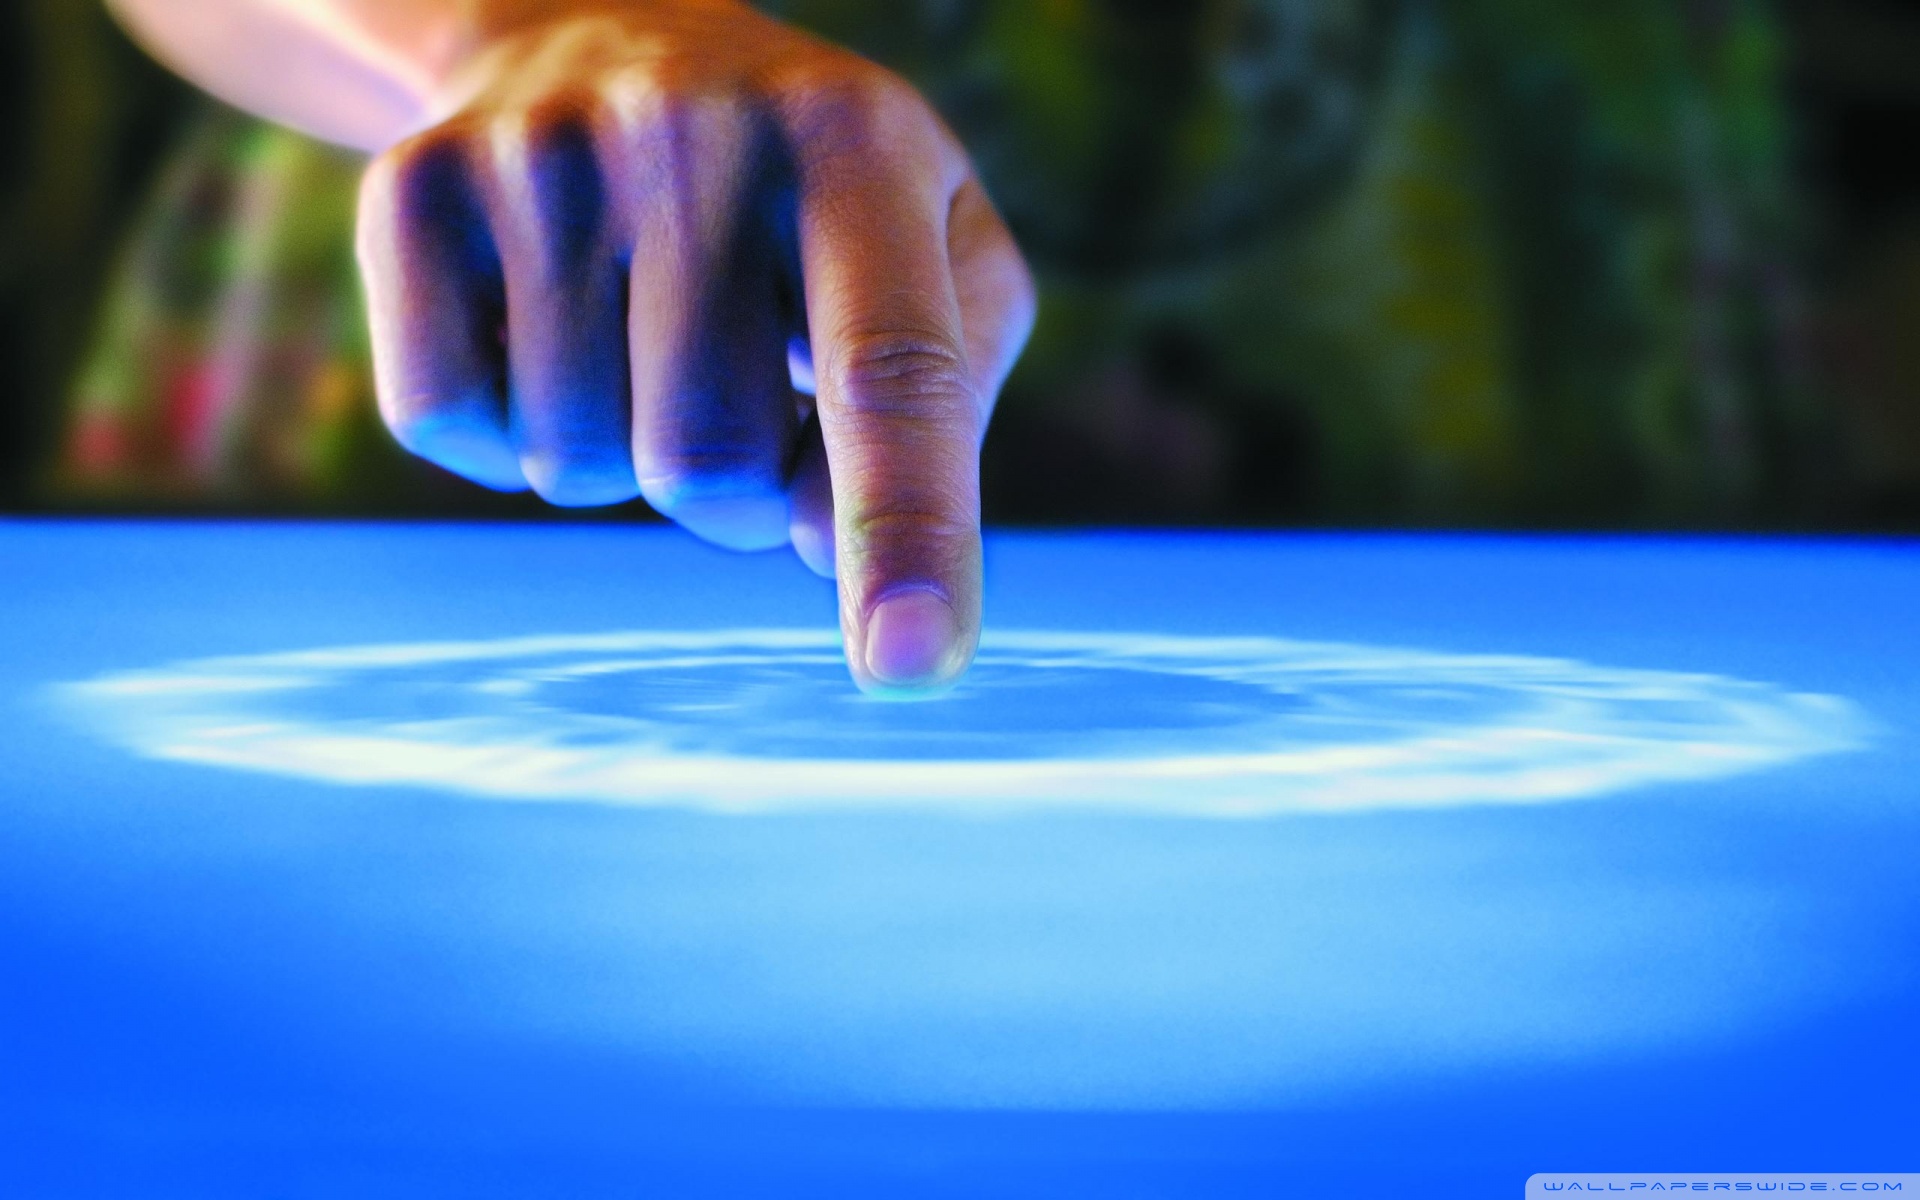 fond d'écran mobile à écran tactile hd,bleu,l'eau,main,ciel,bleu électrique